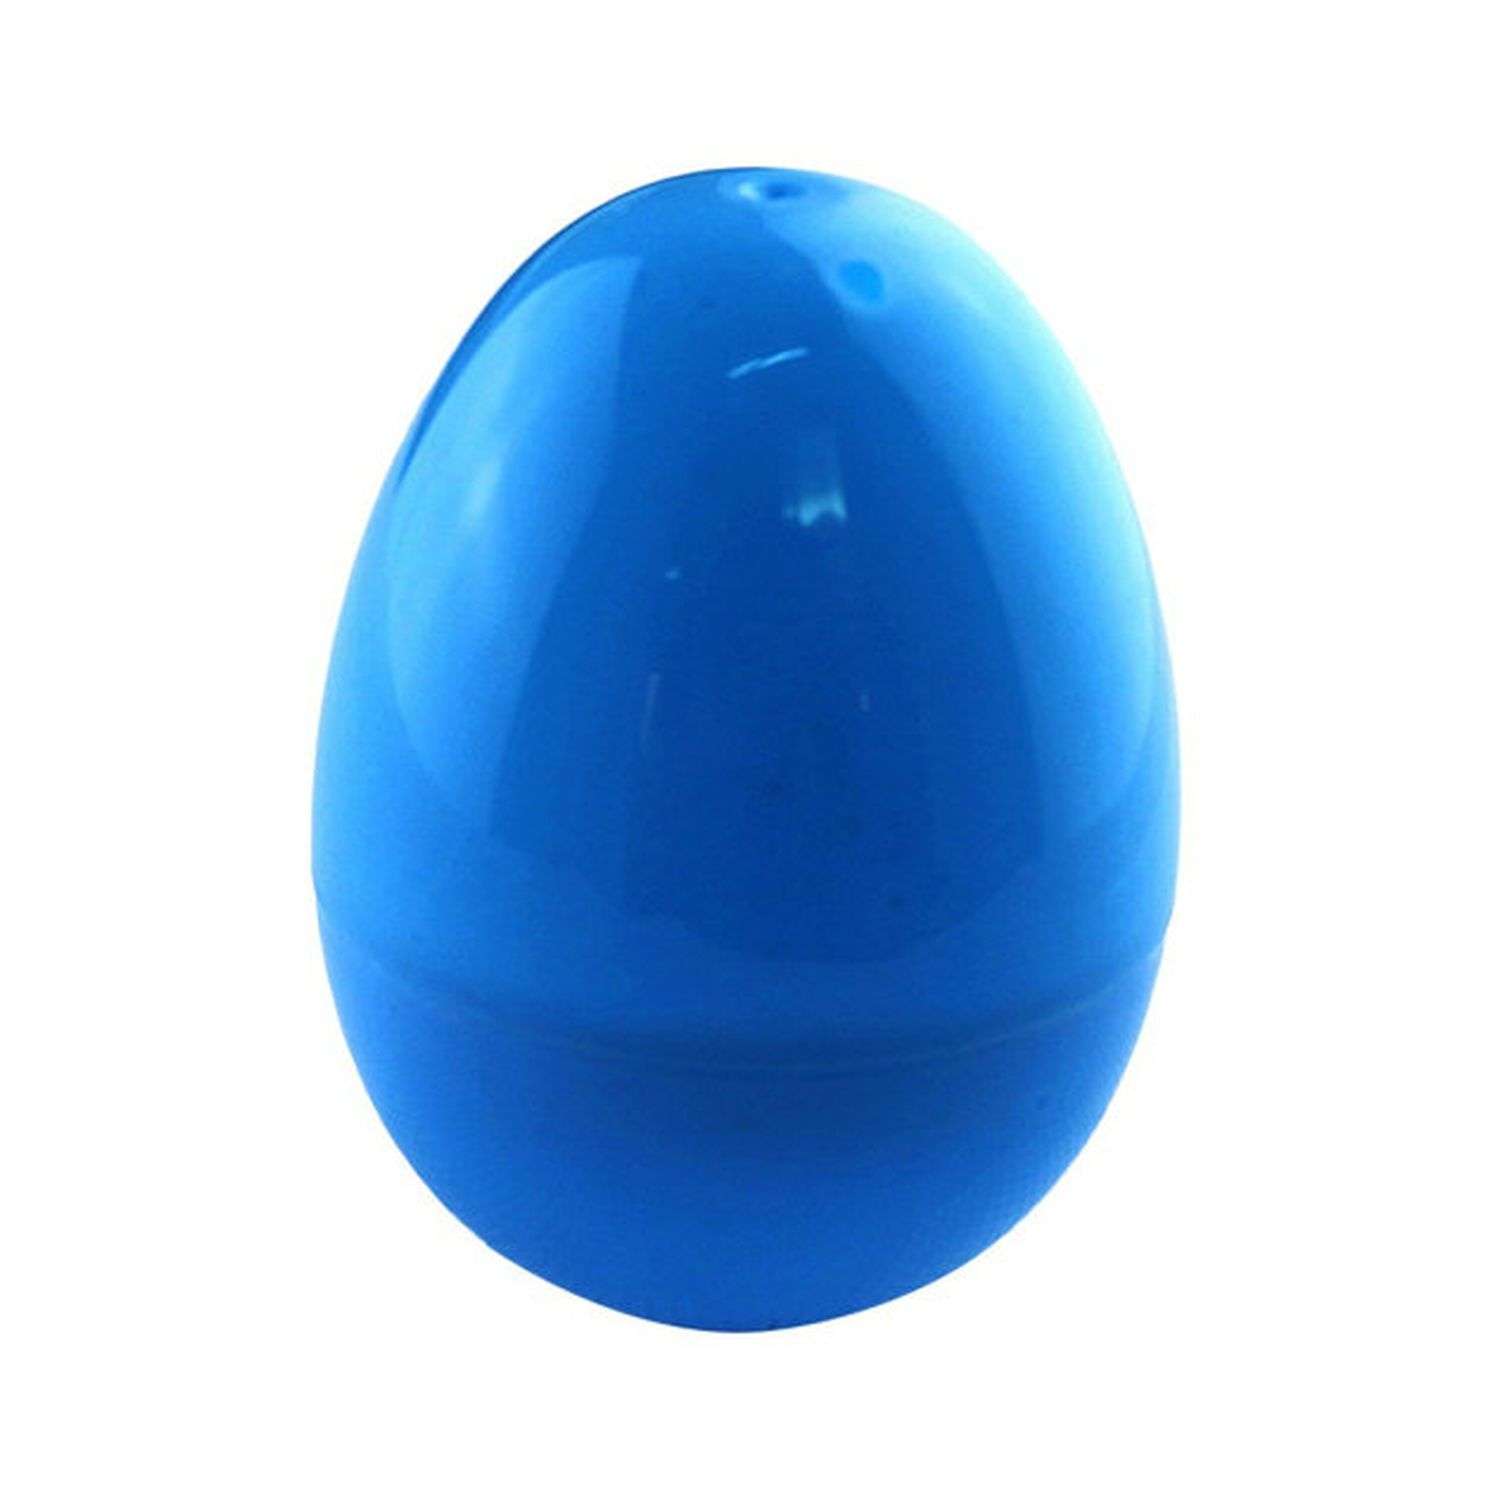 Светящееся яйцо Uniglodis голубой - фото 1